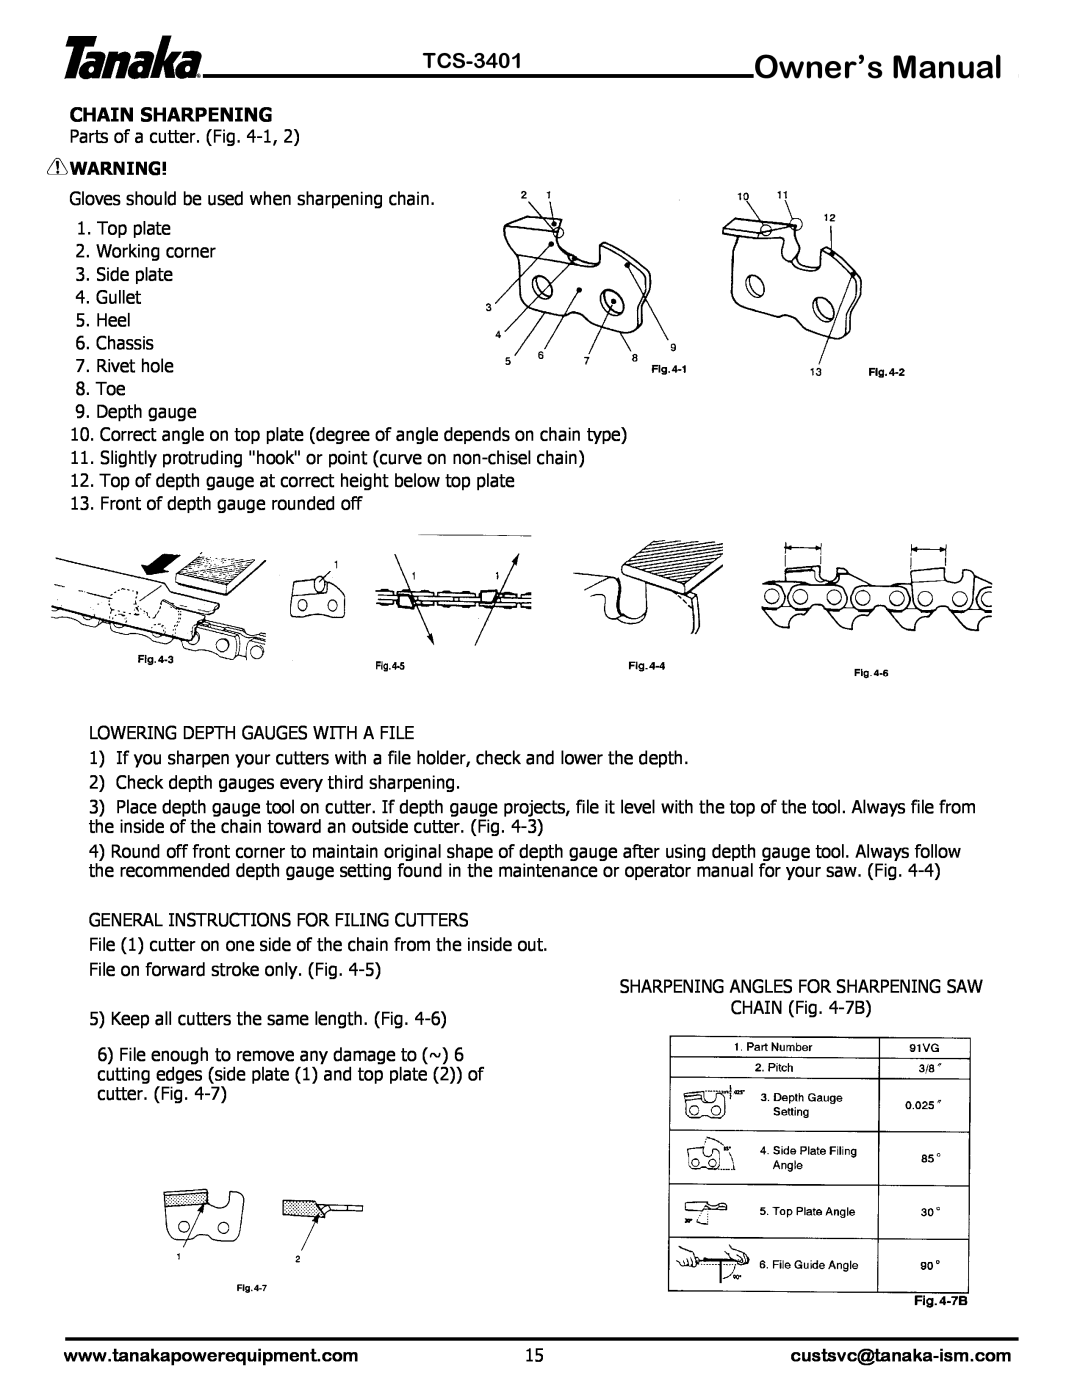 Tanaka TCS-3401 manual Chain Sharpening 